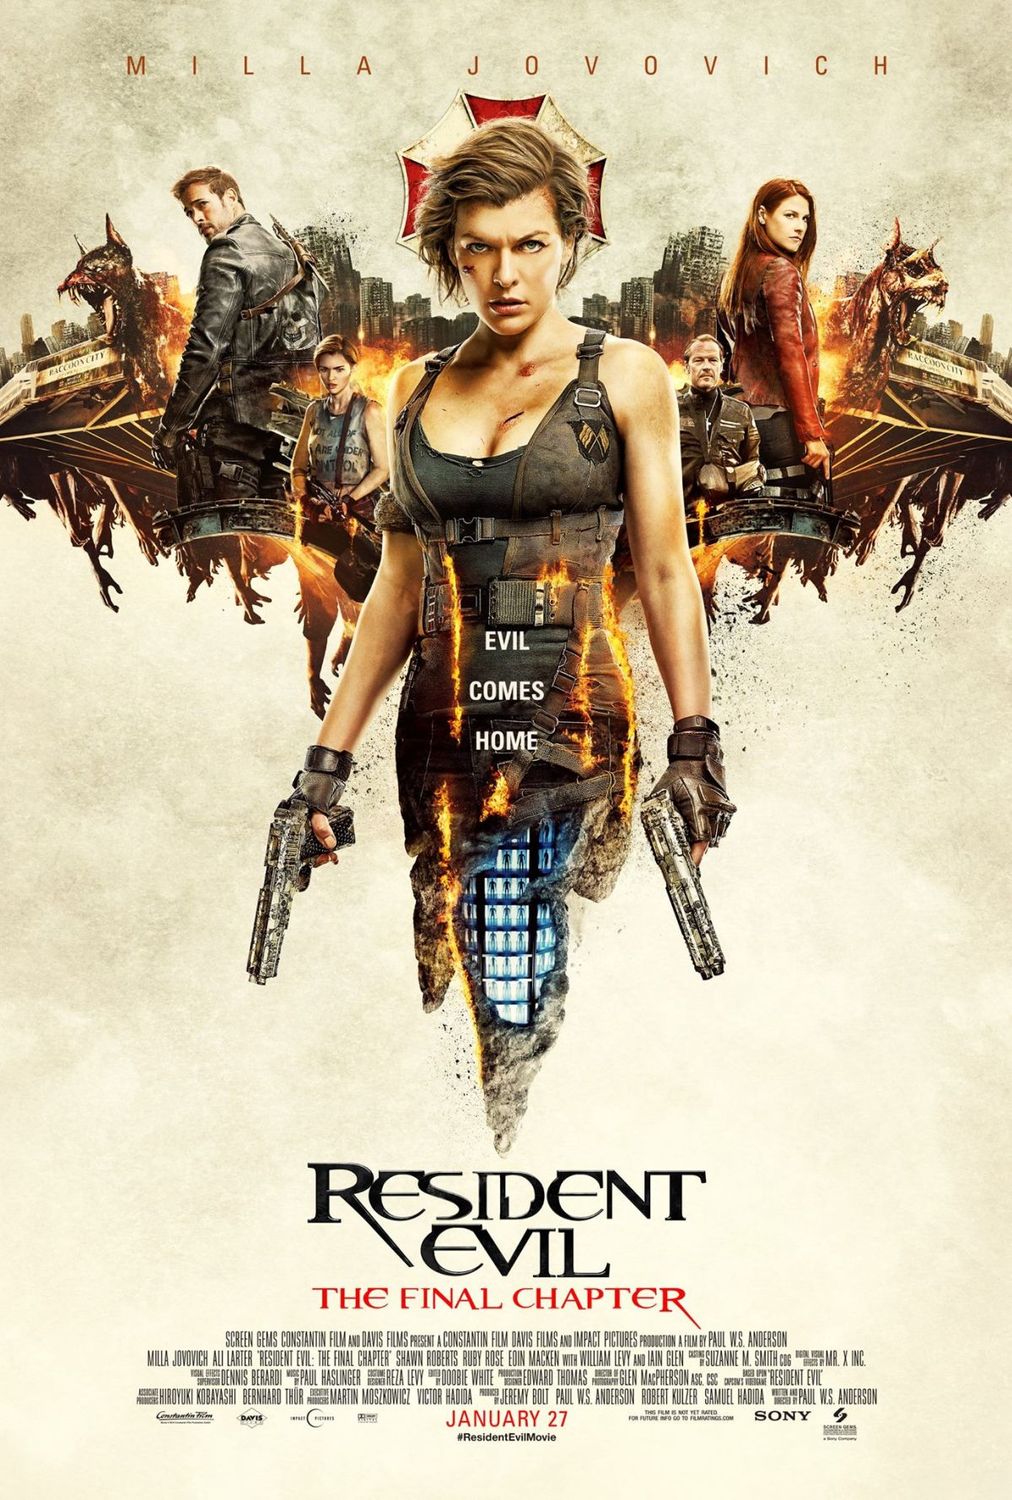 Stiahni si Filmy s titulkama Resident Evil: Posledni kapitola / Resident Evil: The Final Chapter (2016)[720p] = CSFD 57%